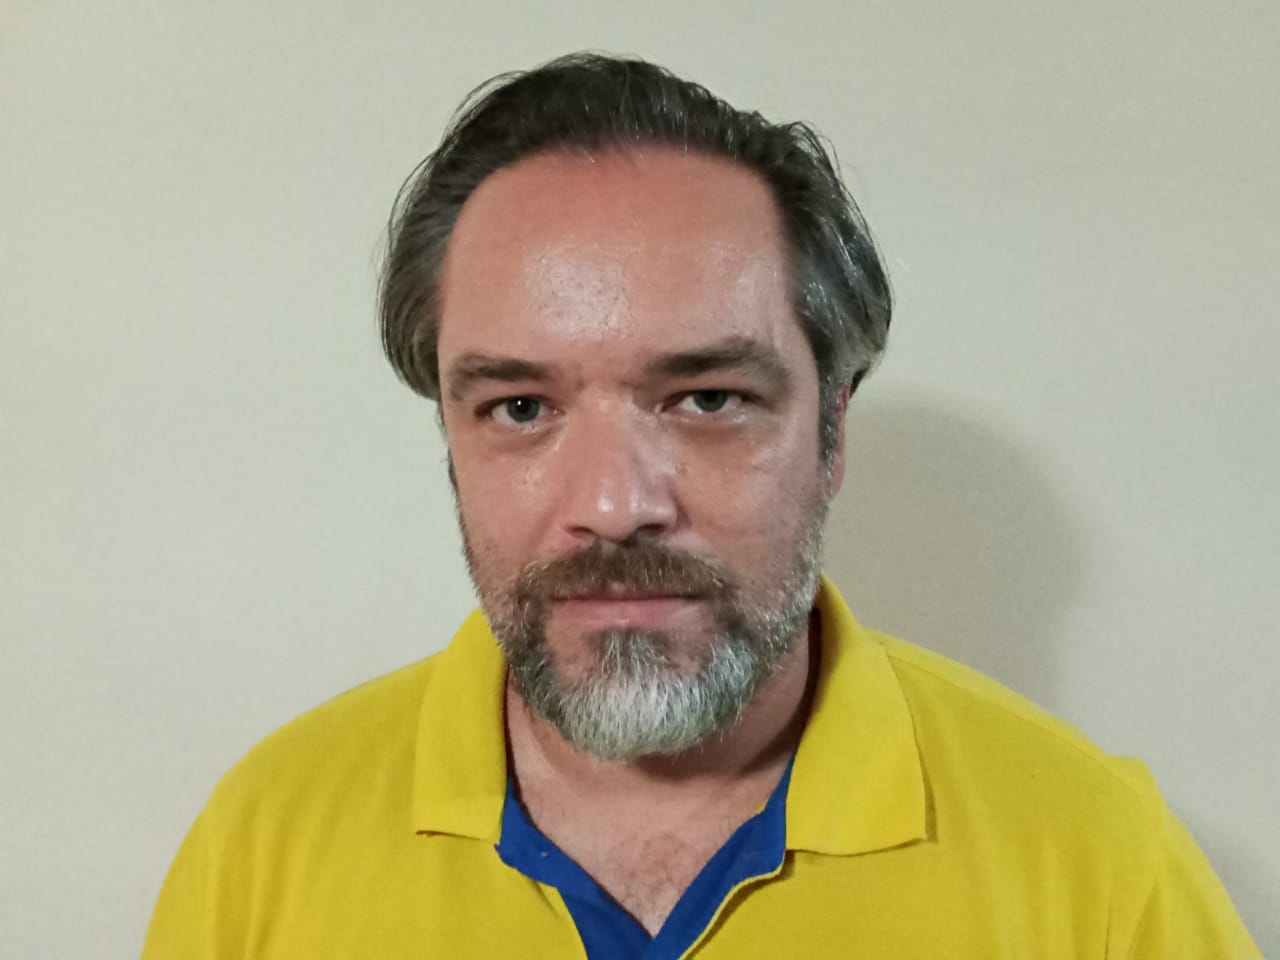 Helder Alves da Silva, criador de placar para avaliar o desempenho dos vereadores – “queremos que eles mostrem realmente que estão trabalhando para o povo”